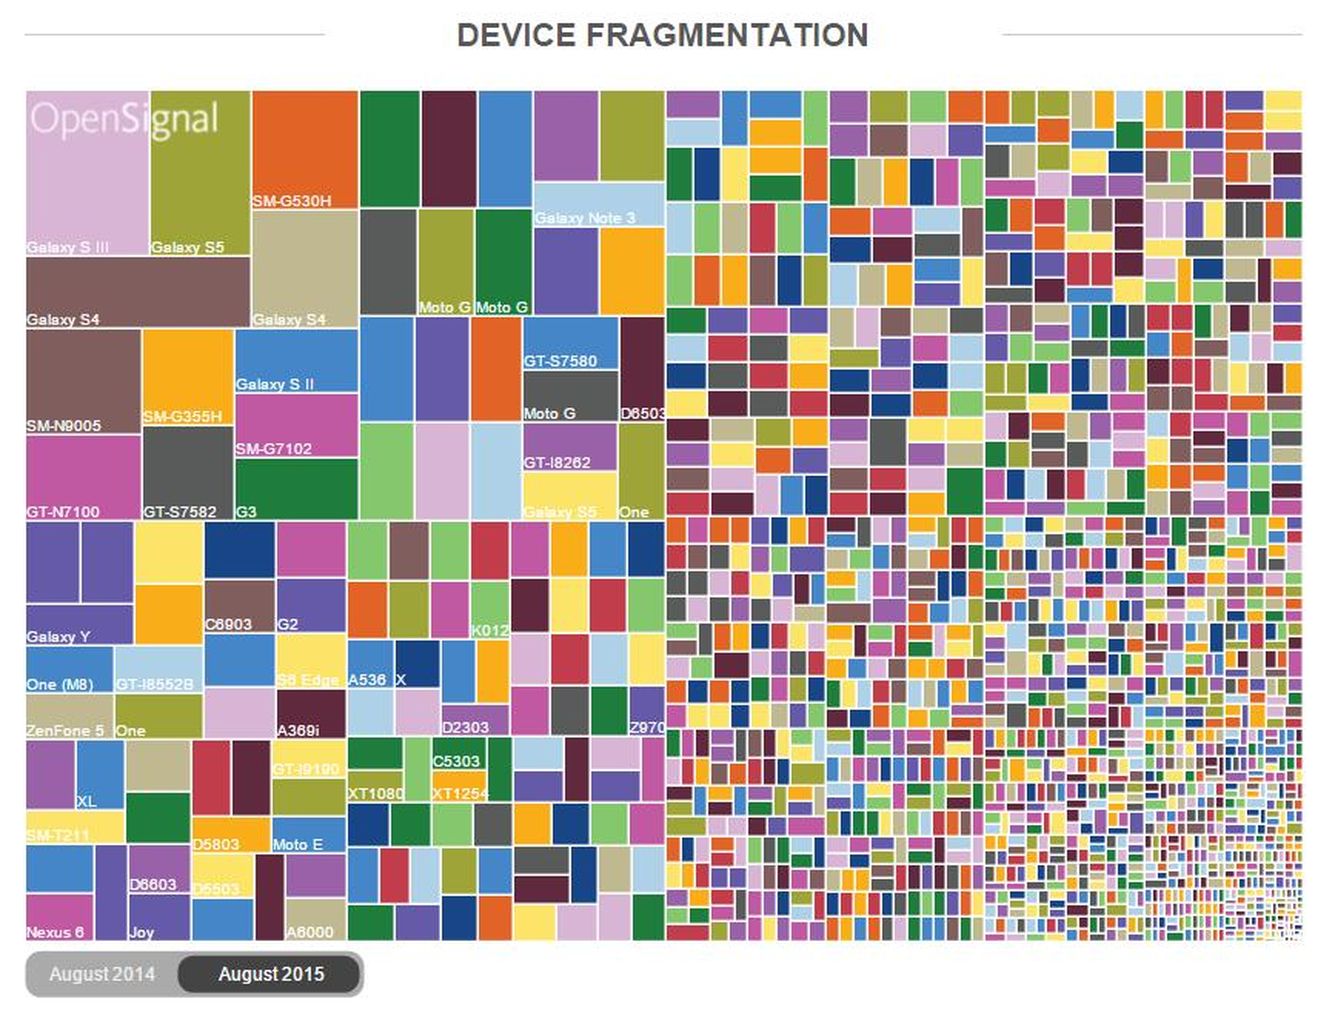 Fragmentación en Android (Agosto 2015, por OpenSignal.com)